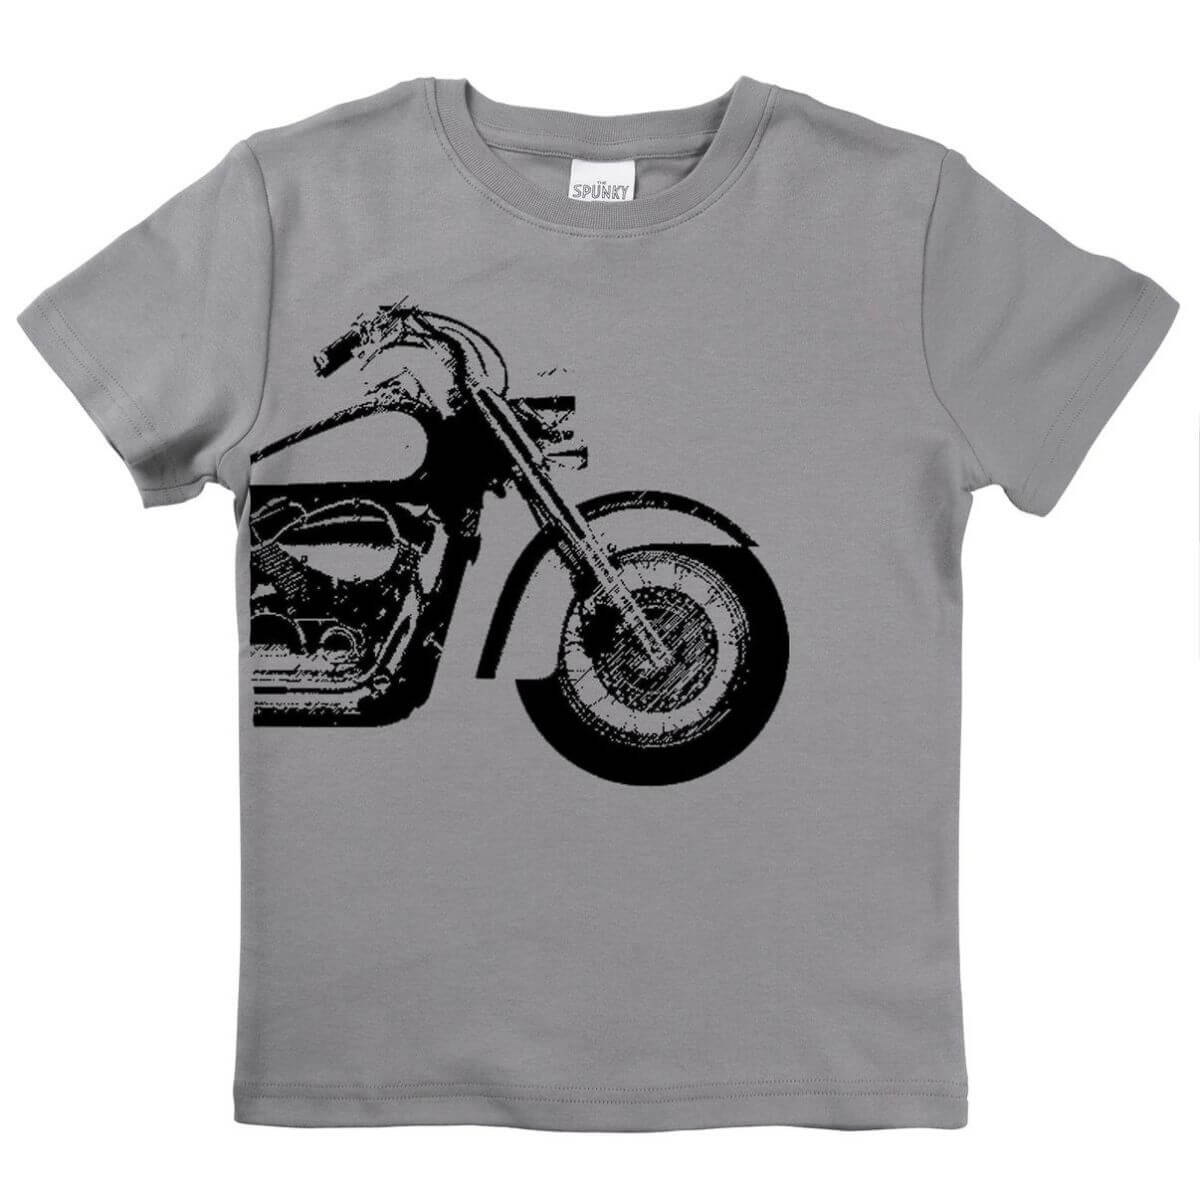 Organic Baby / Toddler Graphic Tee Shirt - Motorcycle